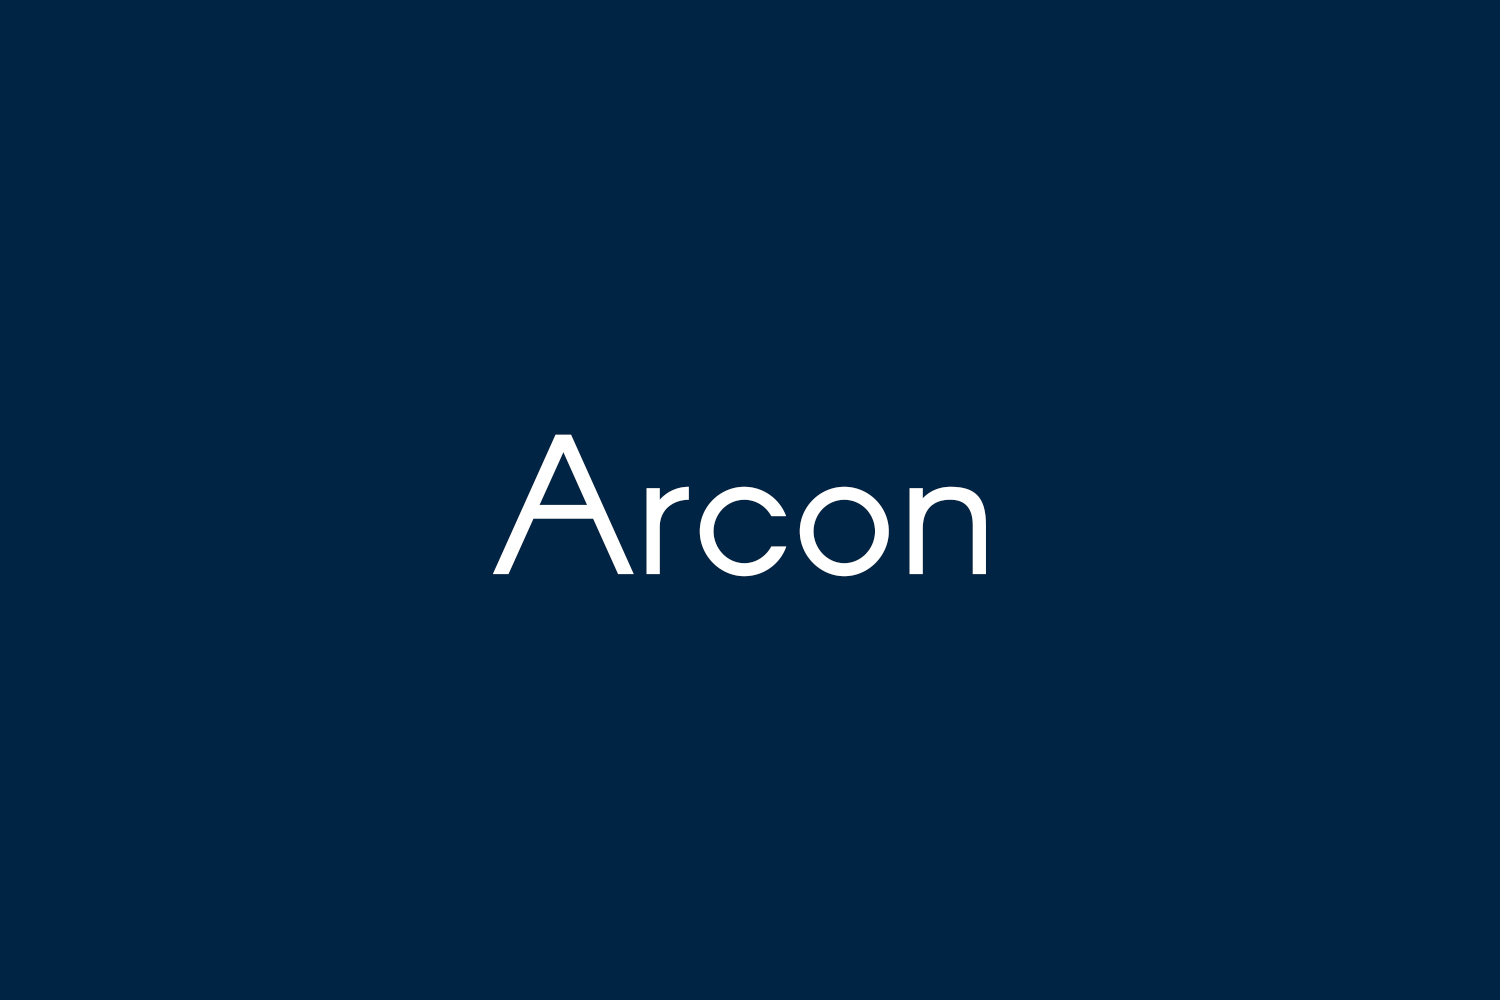 ARCON Alternatives